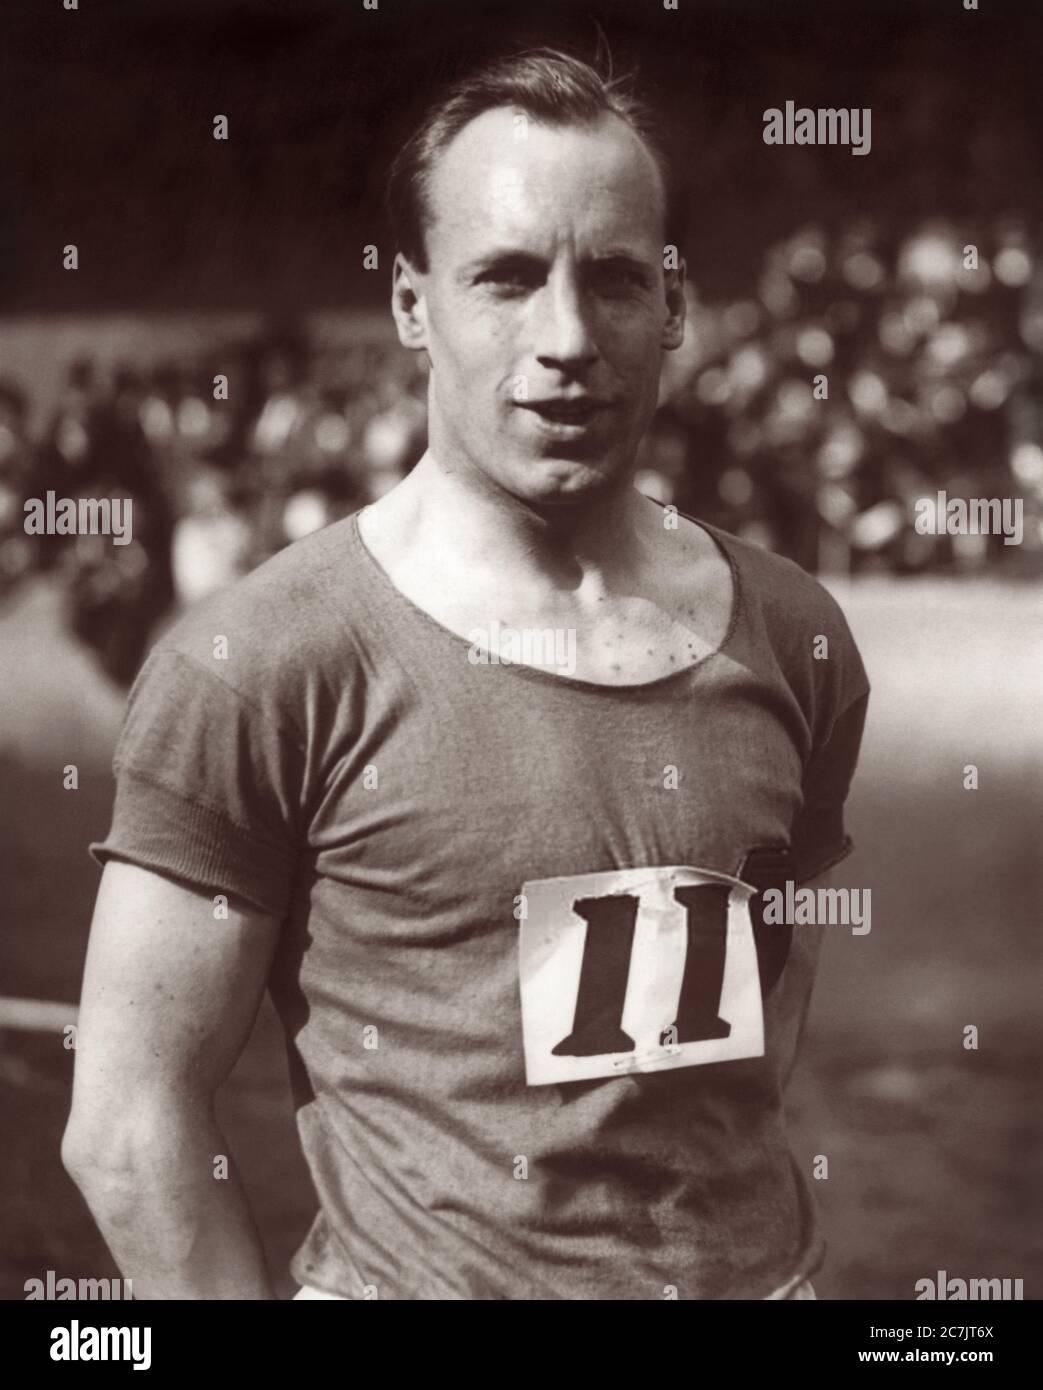 Eric Liddell (1902-1945), britischer Olympischer Goldmedaillenläufer und christlicher Missionar in China. Liddell, ein frommer Christ, weigerte sich, bei seinen bevorzugten 100-Meter-Rennen zu laufen, weil die Veranstaltung am Sonntag stattfinden sollte, während er bei den Olympischen Spielen 1924 in Paris abgebildet wurde. Stattdessen lief er an einem Wochentag im 400-Meter-Rennen und gewann. Liddell ist in dem Oscar-prämierten Film Chariots of Fire zu sehen. Stockfoto